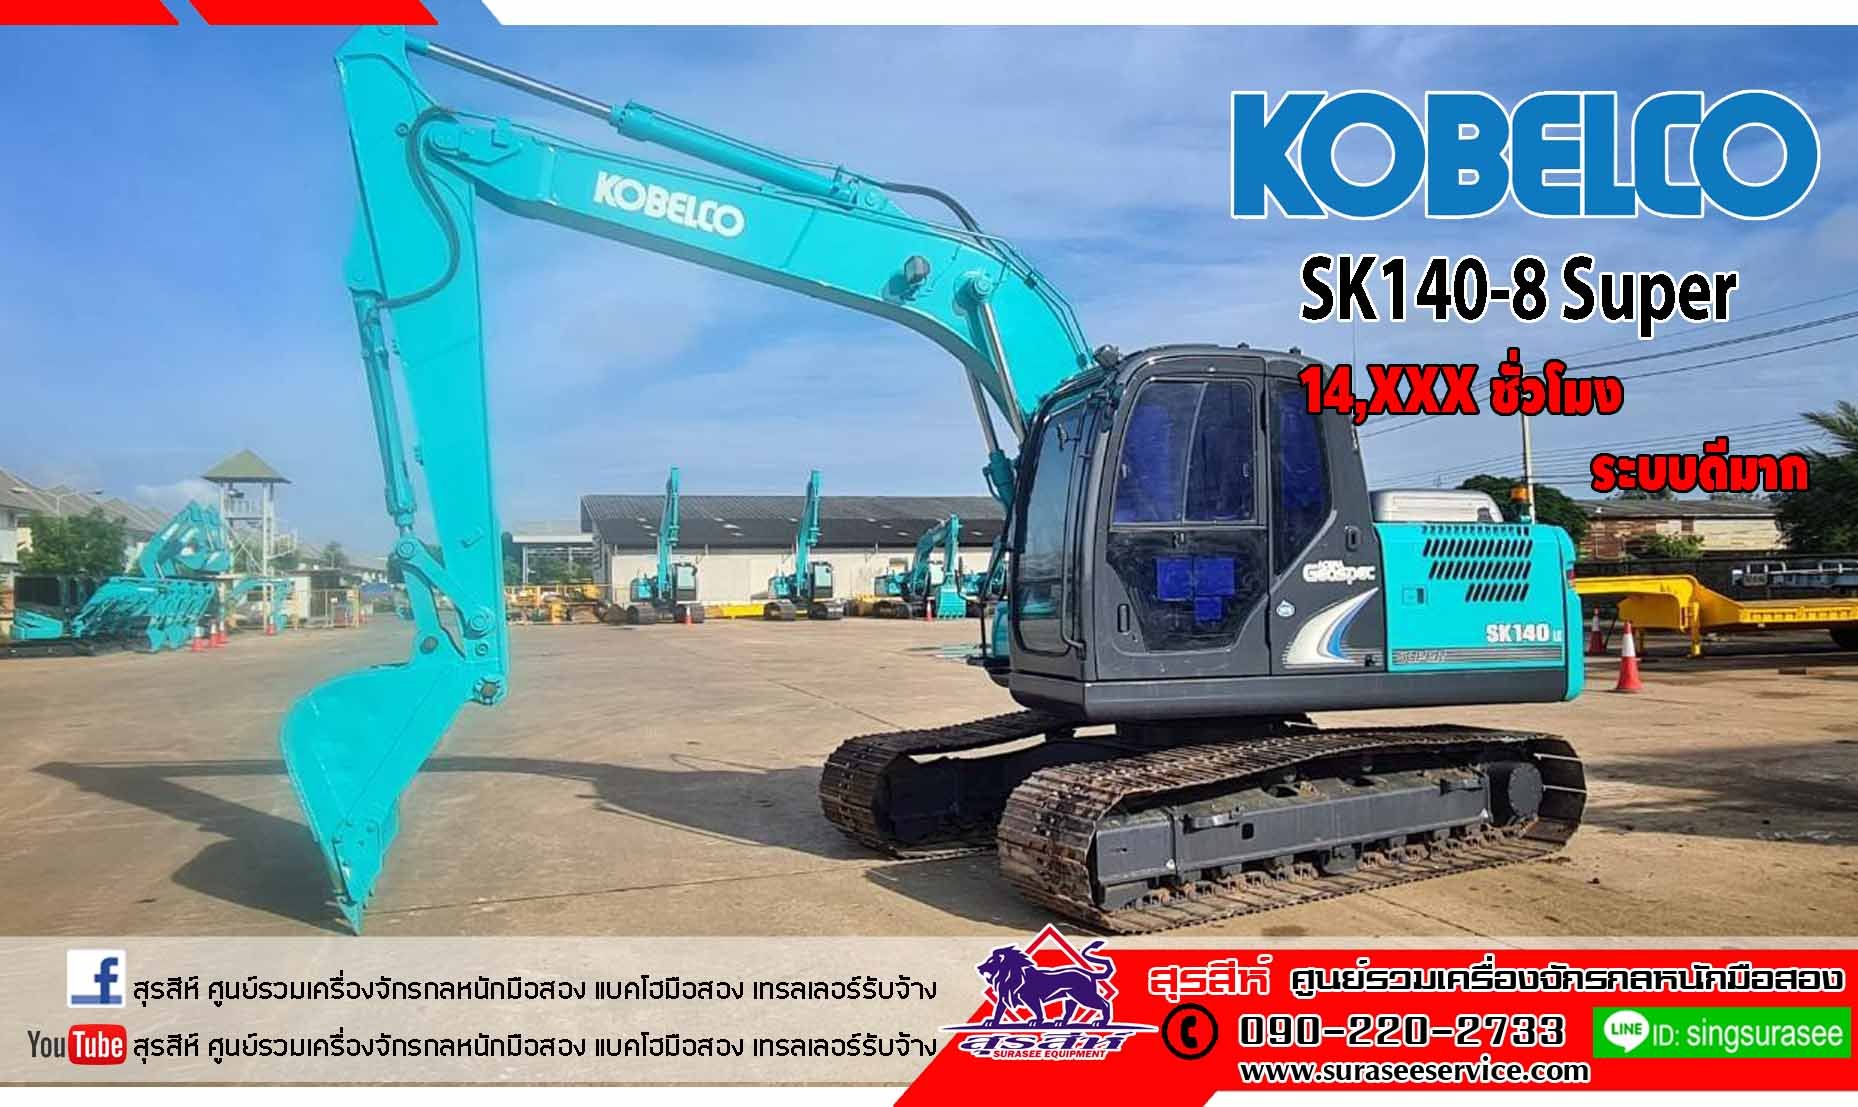 KOBELCO SK140-8 Super